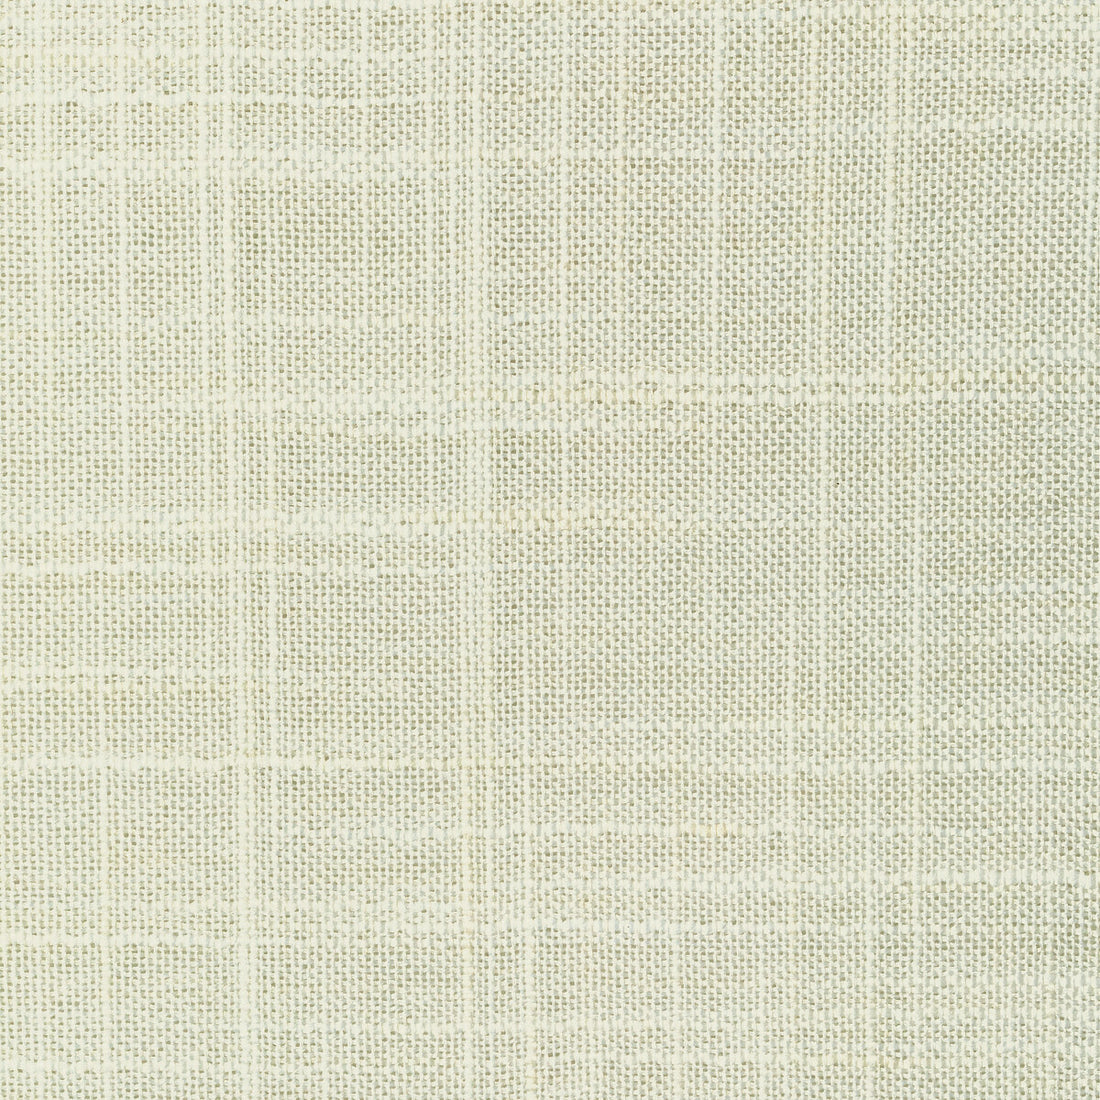 Kravet Basics fabric in 8813-101 color - pattern 8813.101.0 - by Kravet Basics